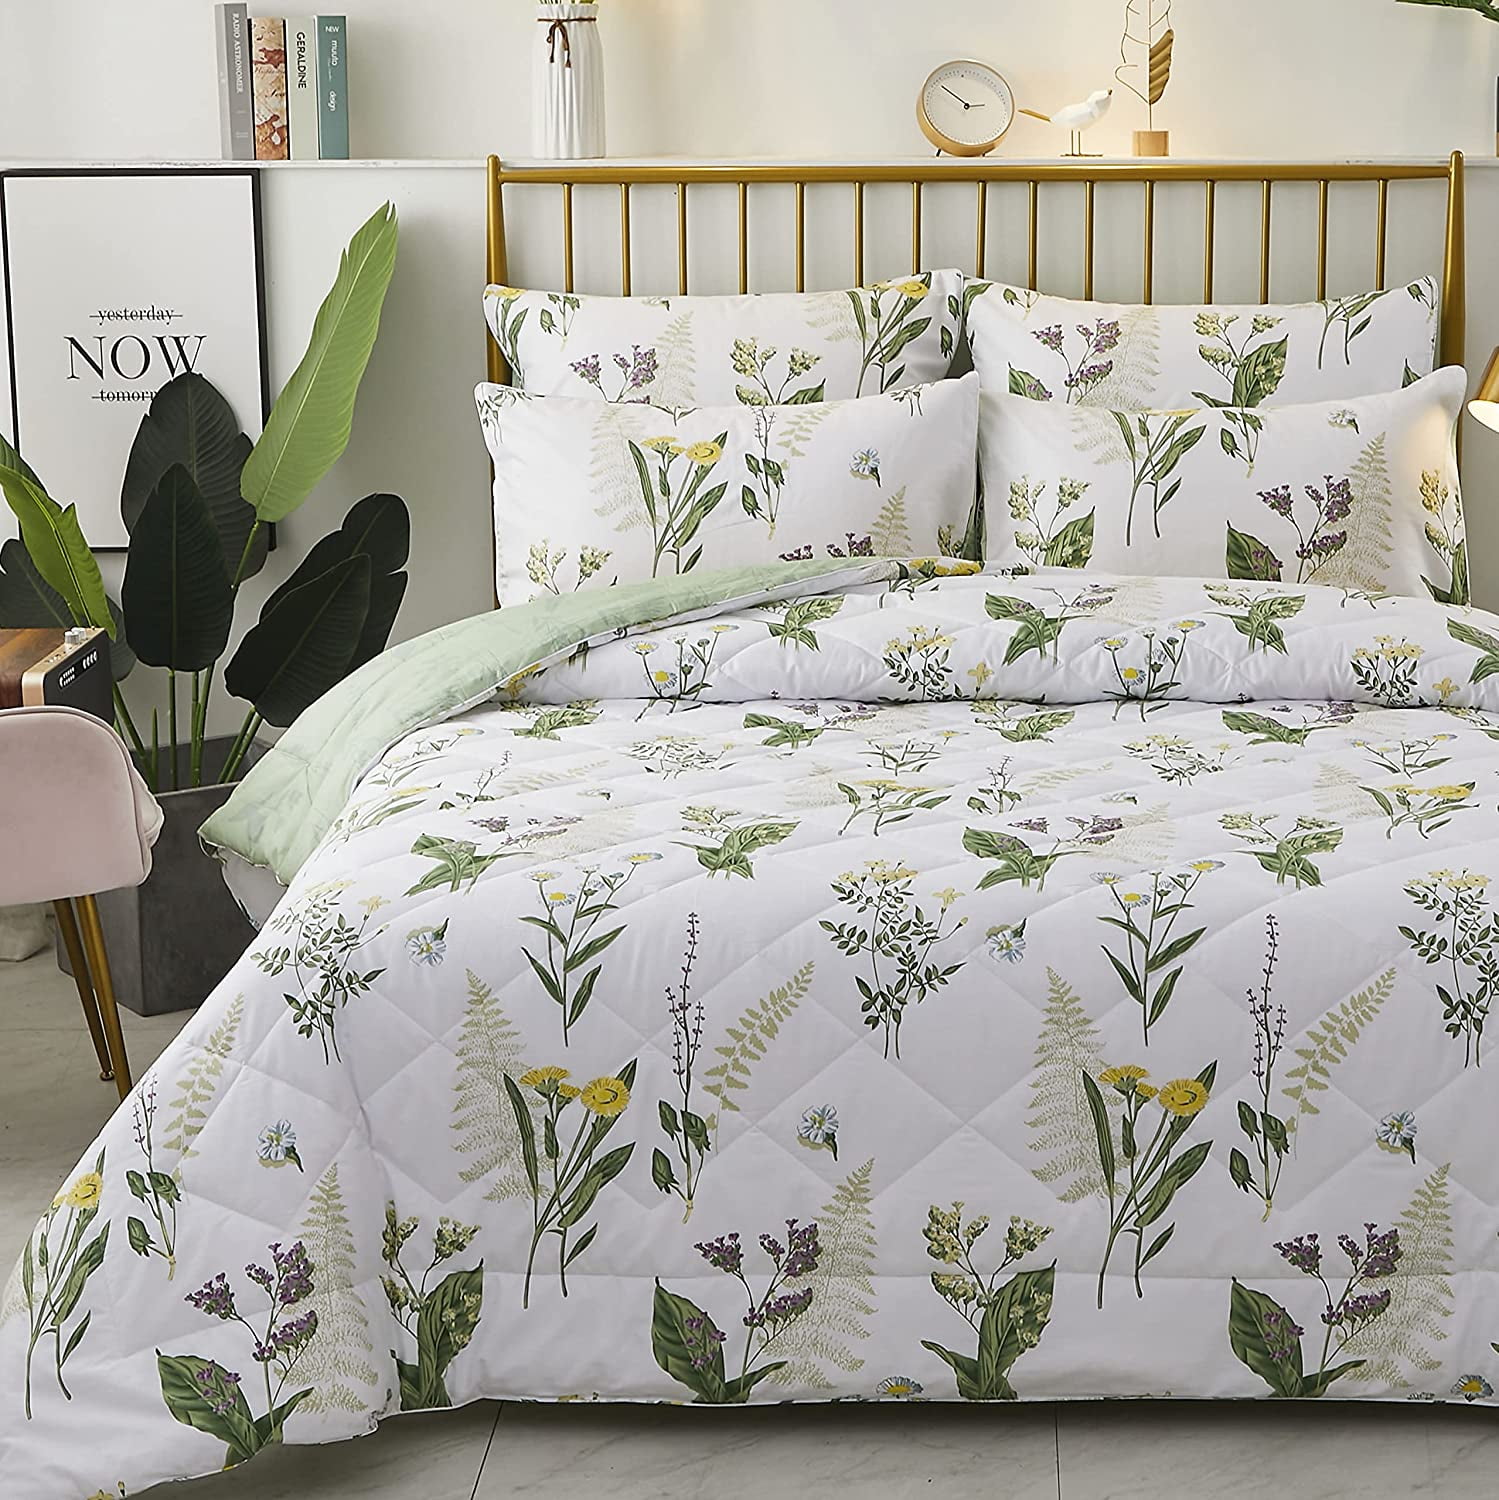 Floral Comforter Set Queen Reversible Botanical Flowers Leaf Printed Bedding Do 